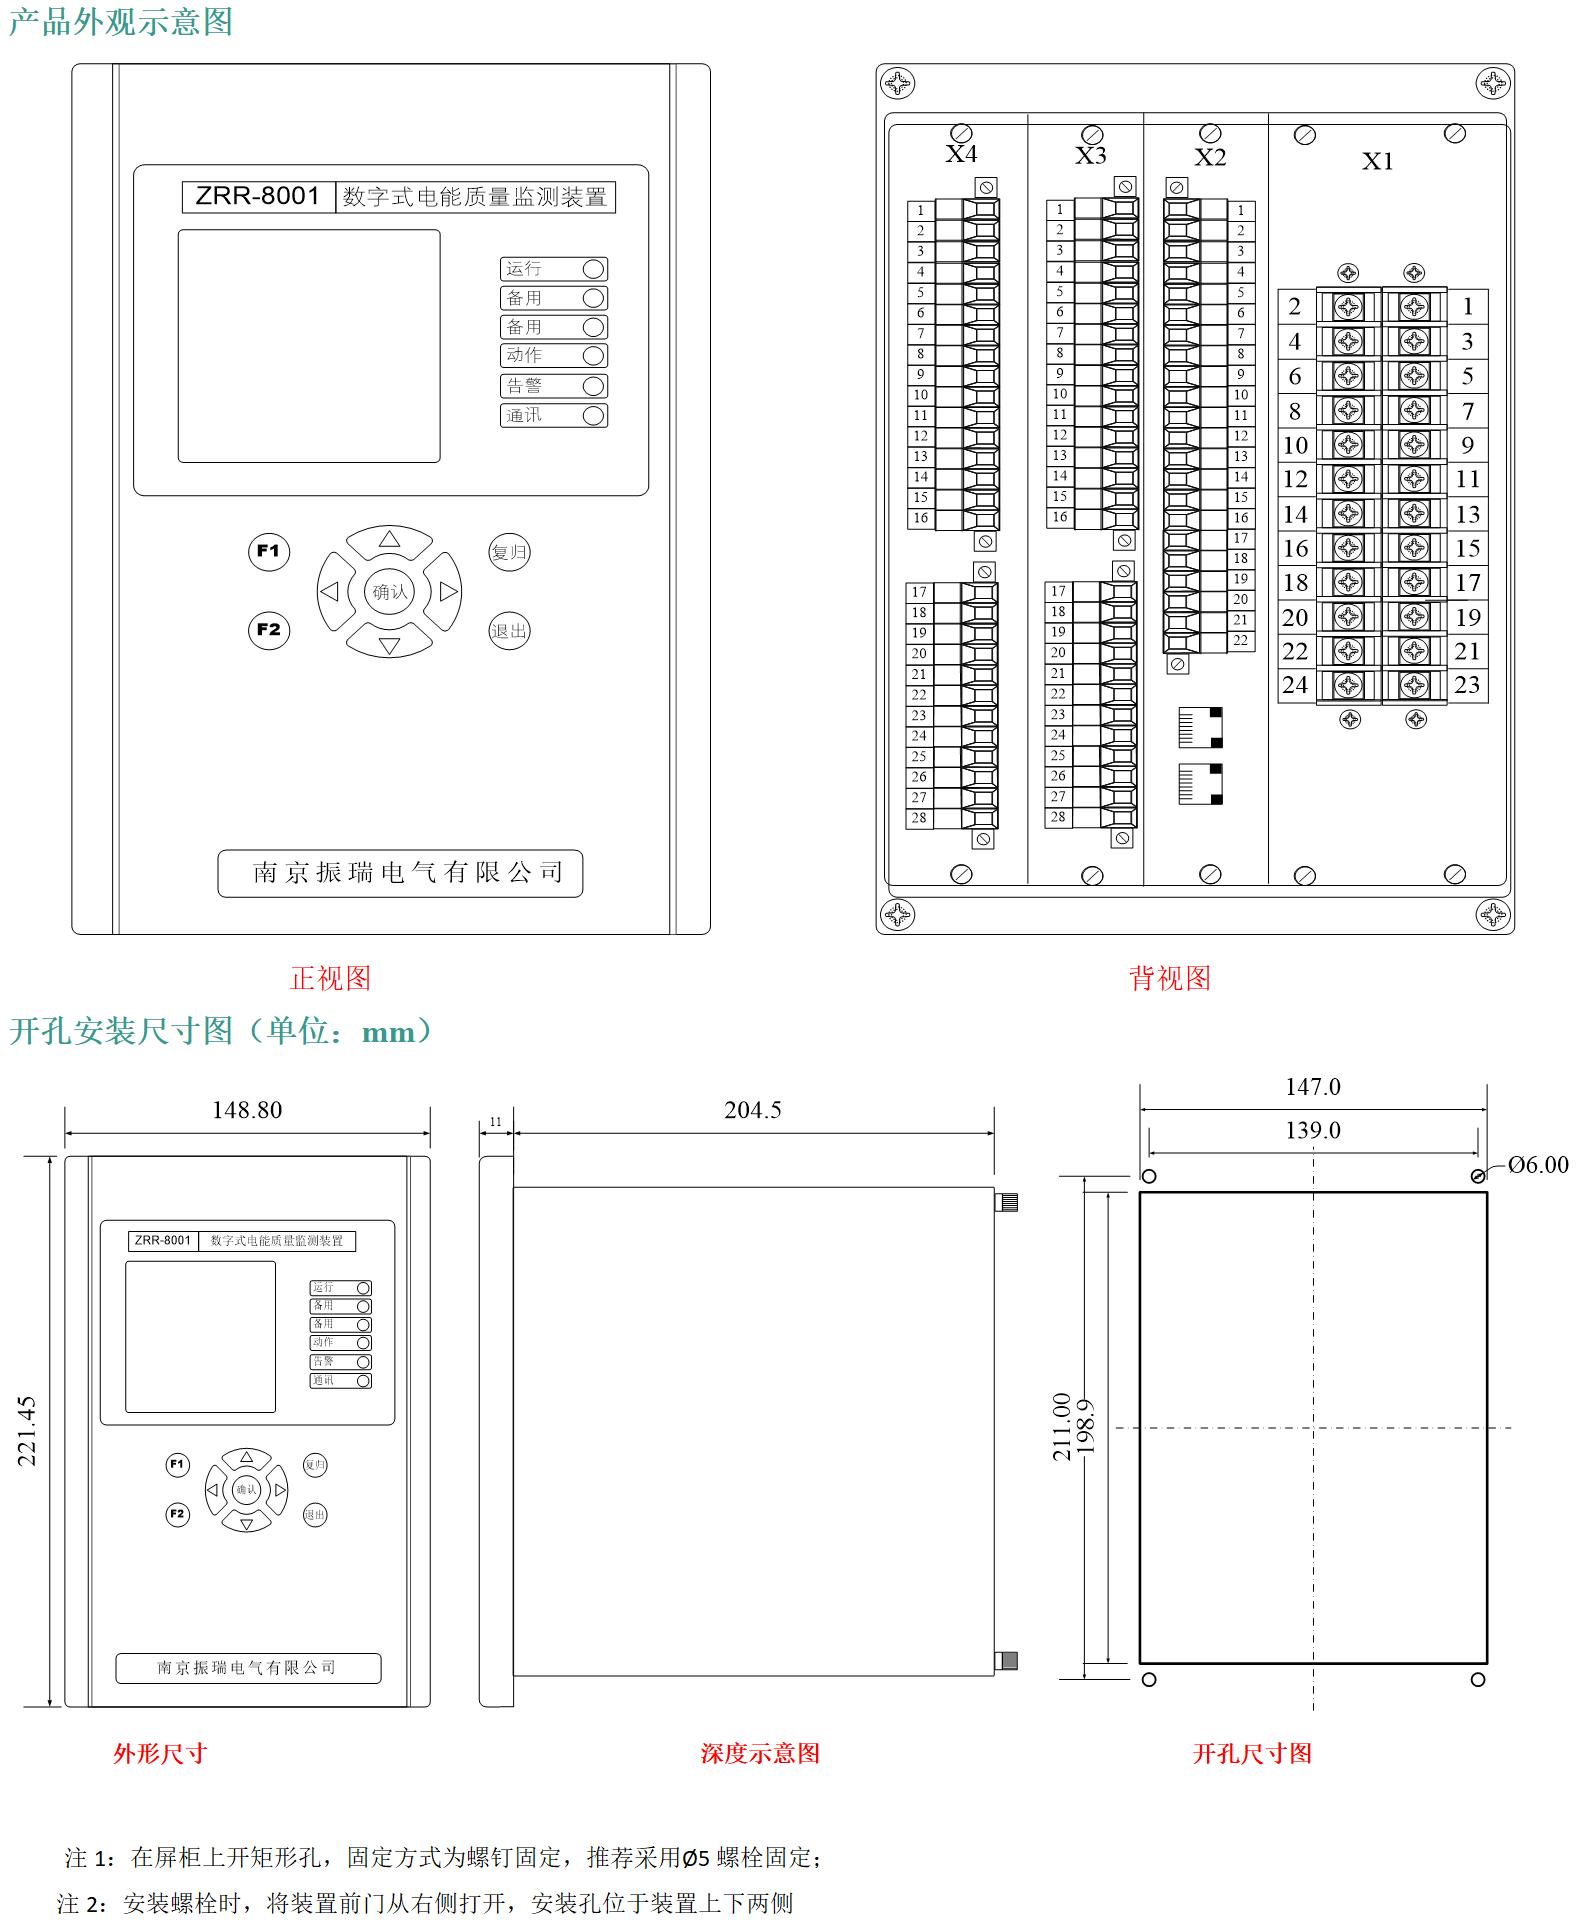 ZRR-8001数字式电能质量监测仪装置相关图纸